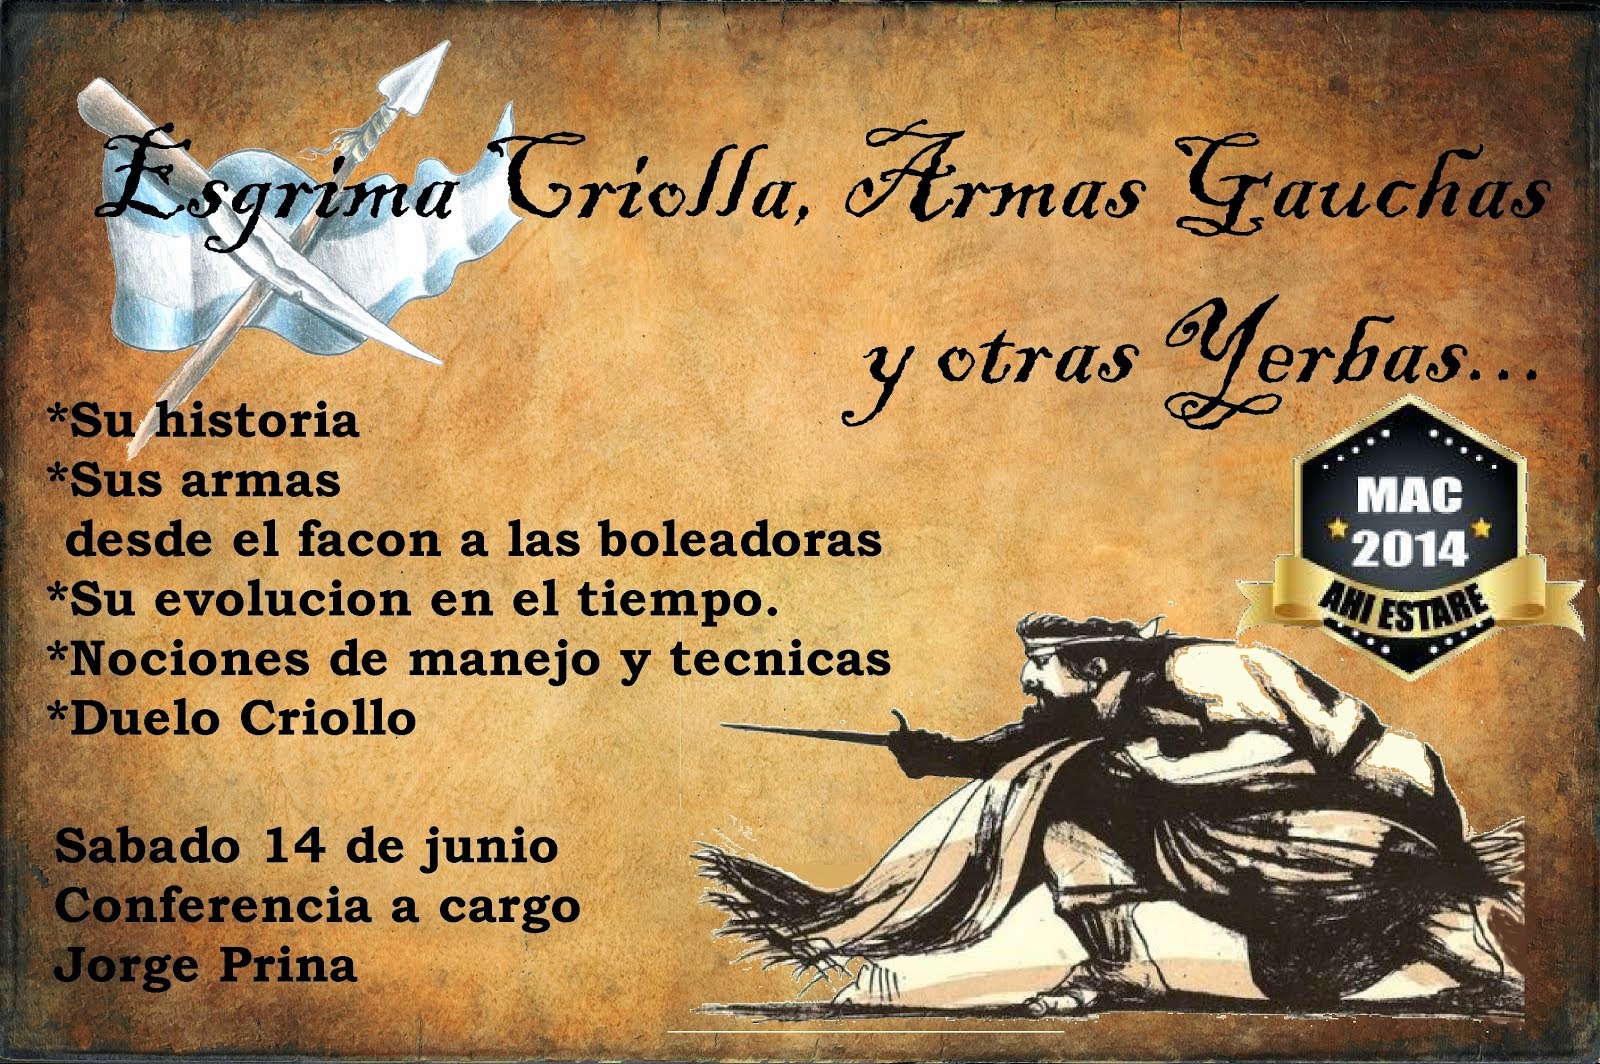 Conferencia sobre Esgrima Crilla Armas Gauchas y Otras Yerbas...